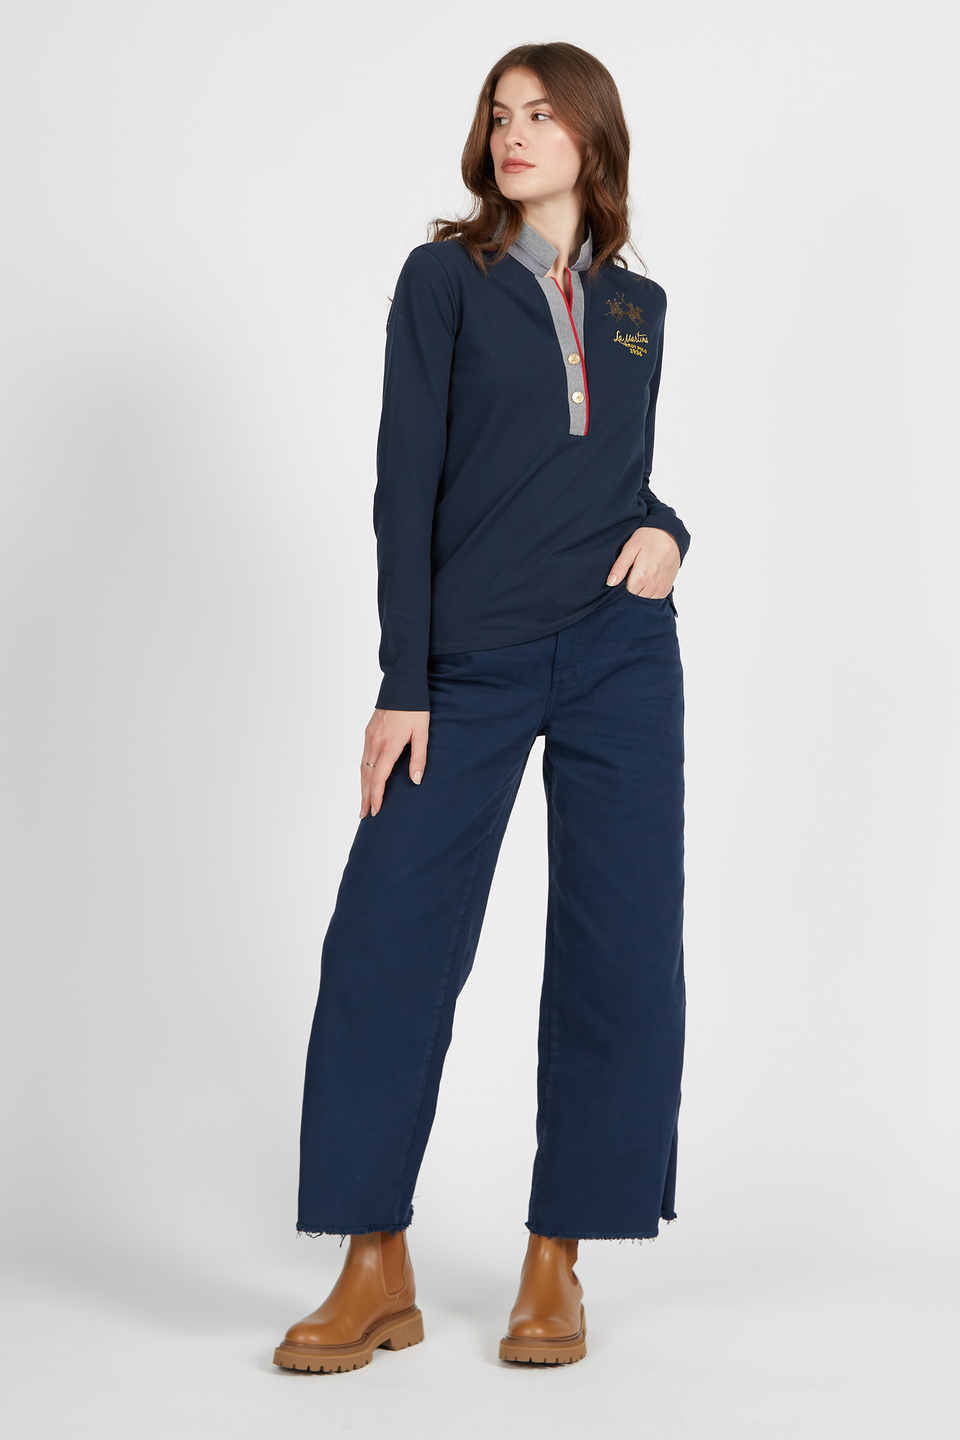 Polo femme à manches longues en coton stretch regular fit | La Martina - Official Online Shop